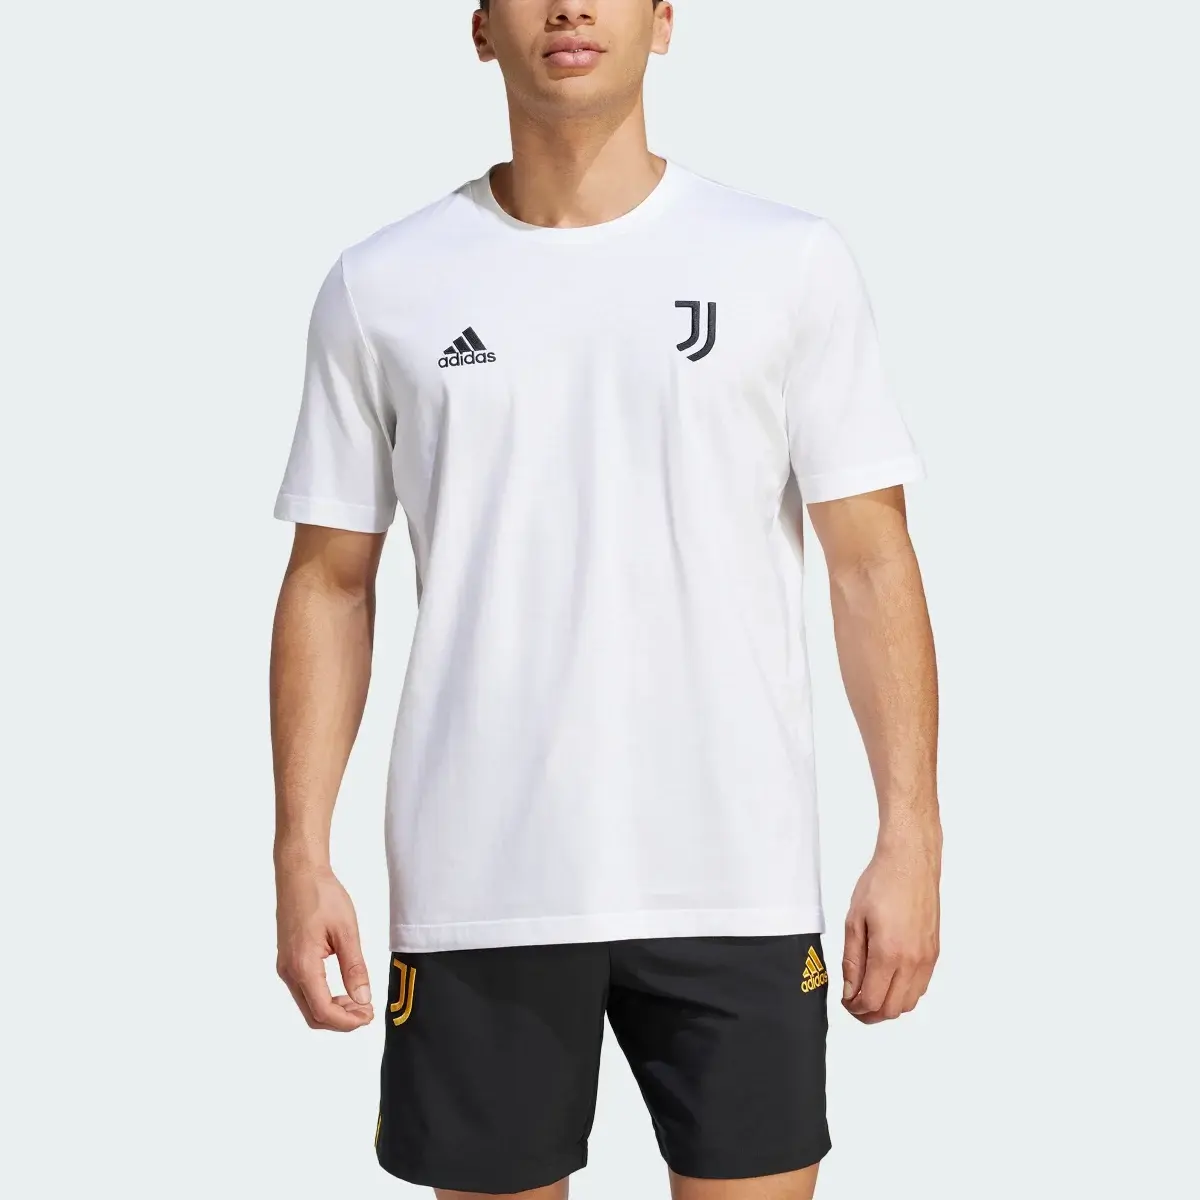 Adidas T-shirt DNA da Juventus. 1